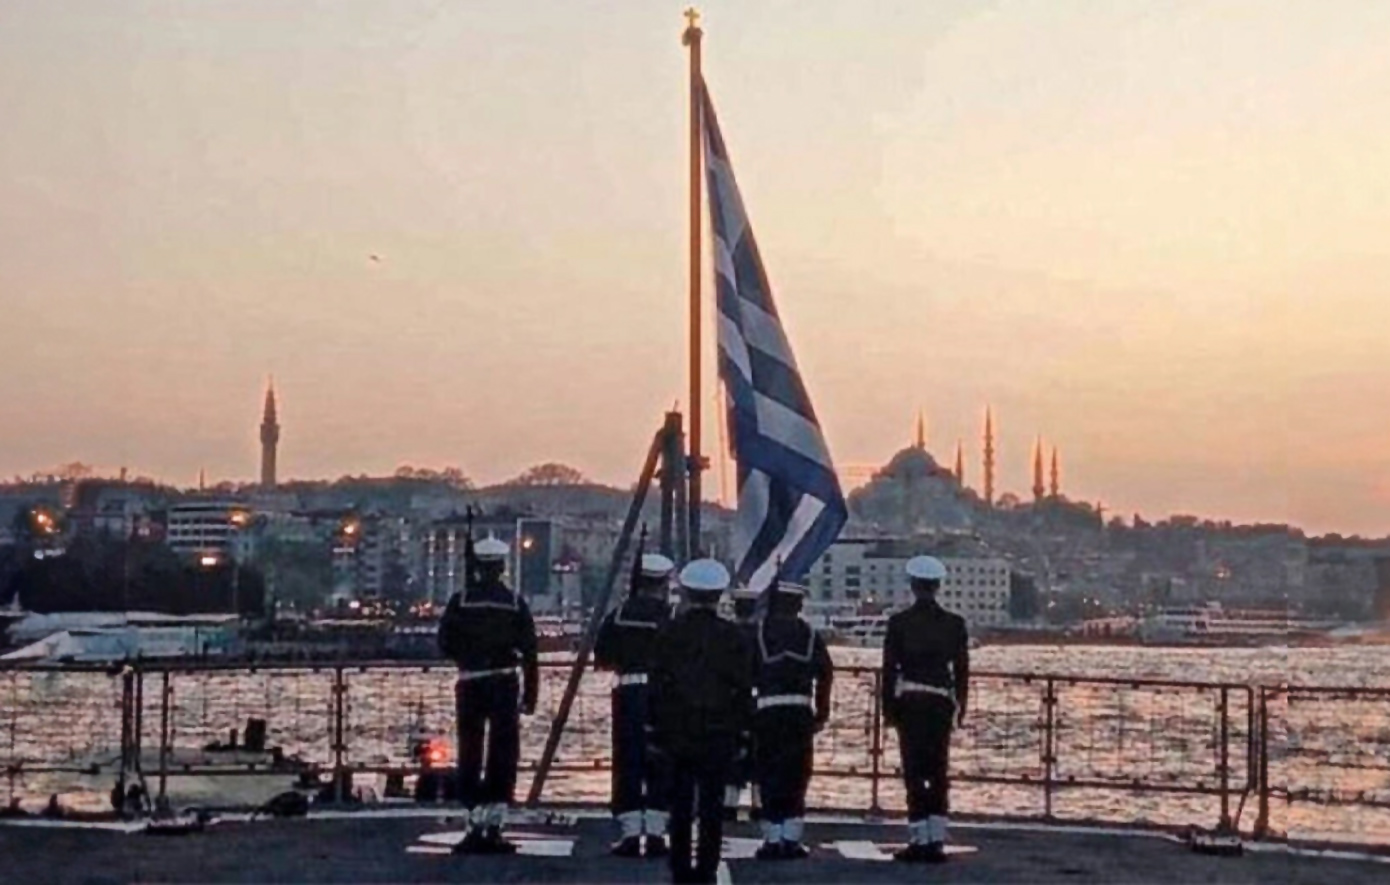 Η φωτογραφία της φρεγάτας «Θεμιστοκλής» με την έπαρση της ελληνικής σημαίας στον Βόσπορο κάνει τον γύρο του διαδικτύου